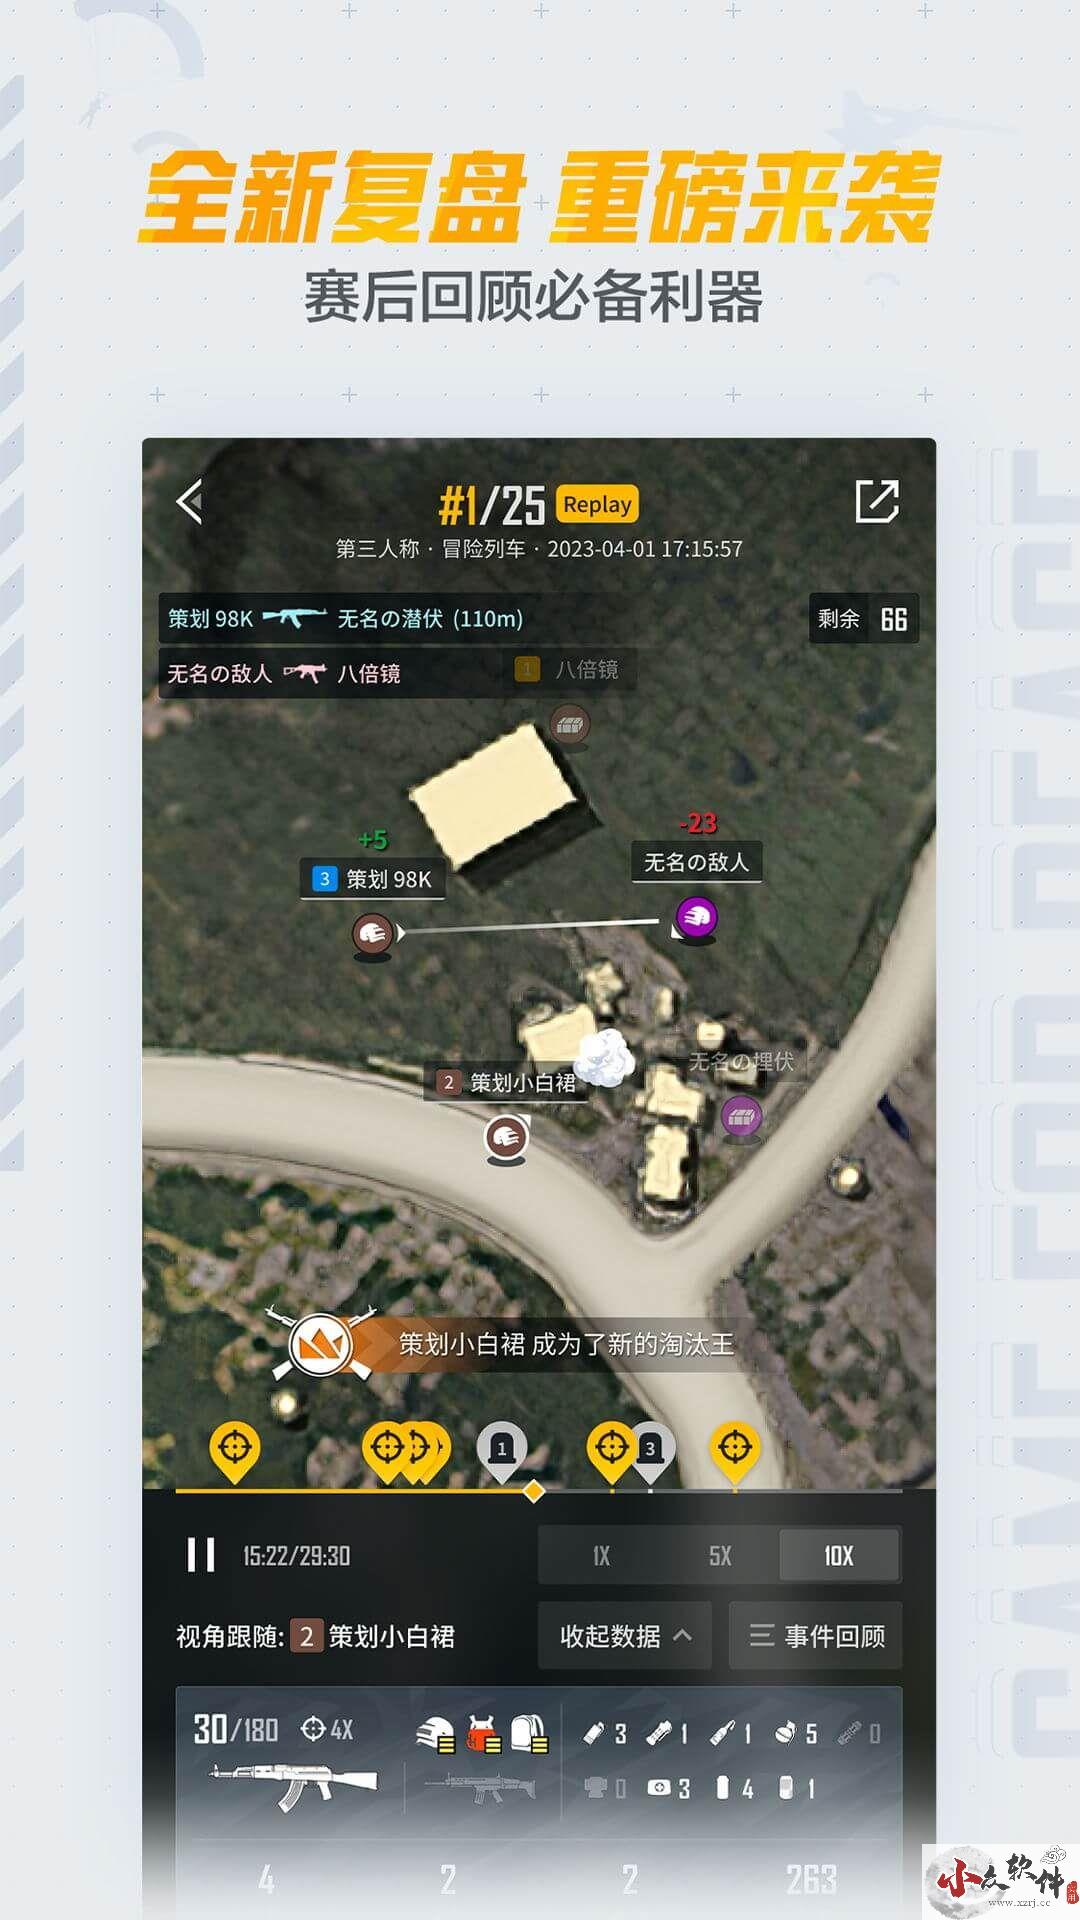 和平营地app官方正版祖新 v3.22.2.1148